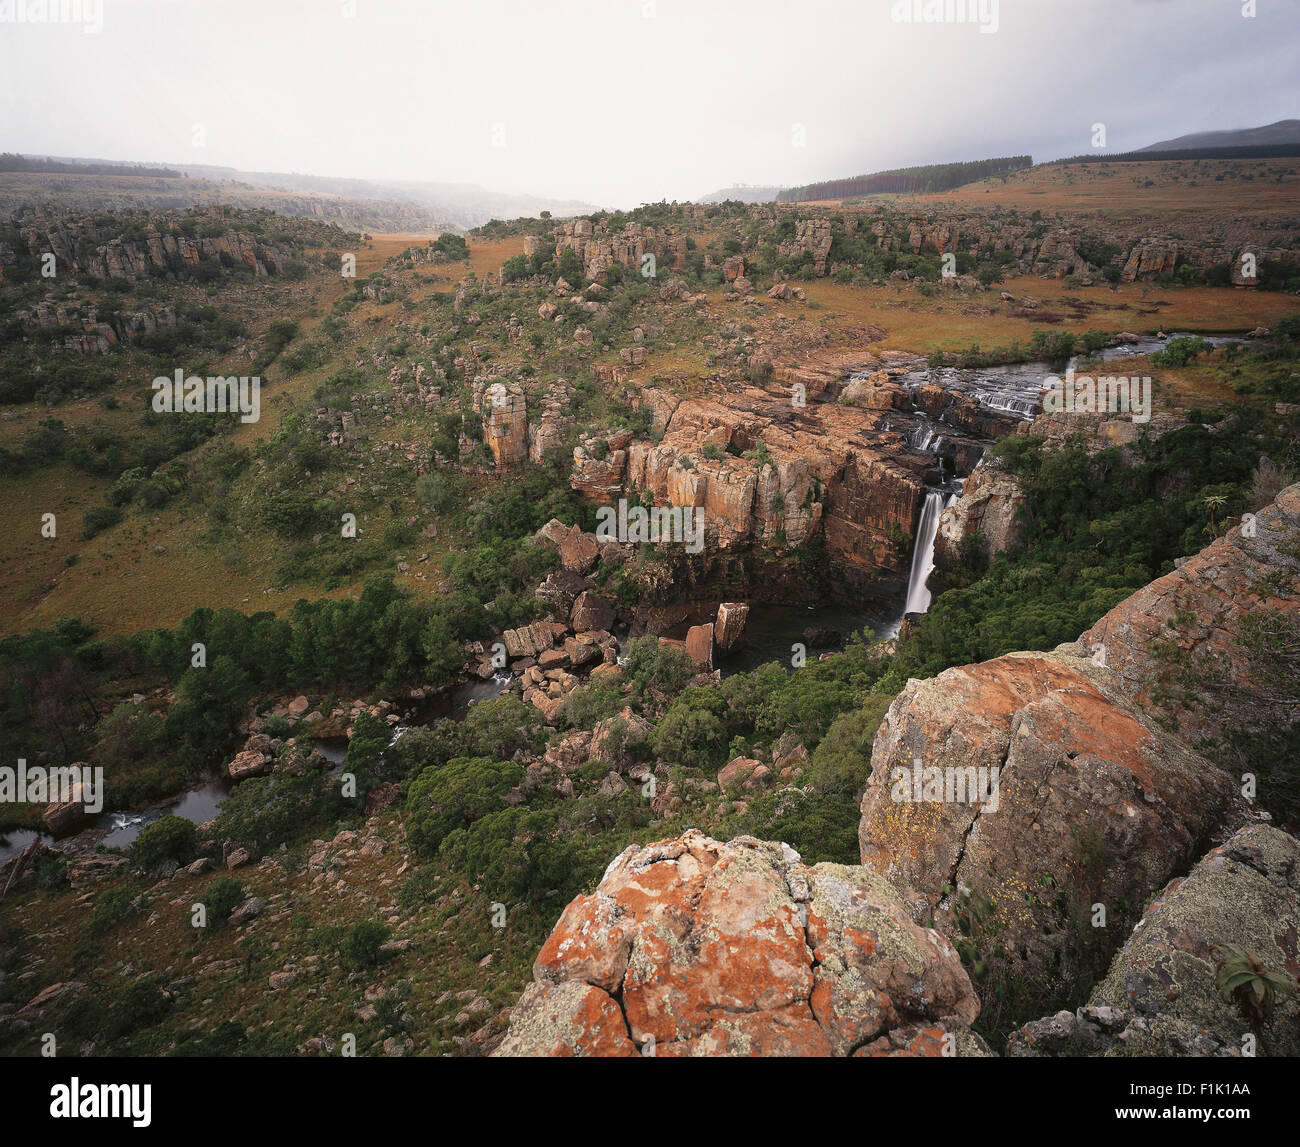 Draufsicht der felsigen Landschaft, Fluss und Wasserfall. Mpumalanga, Südafrika, Afrika. Stockfoto